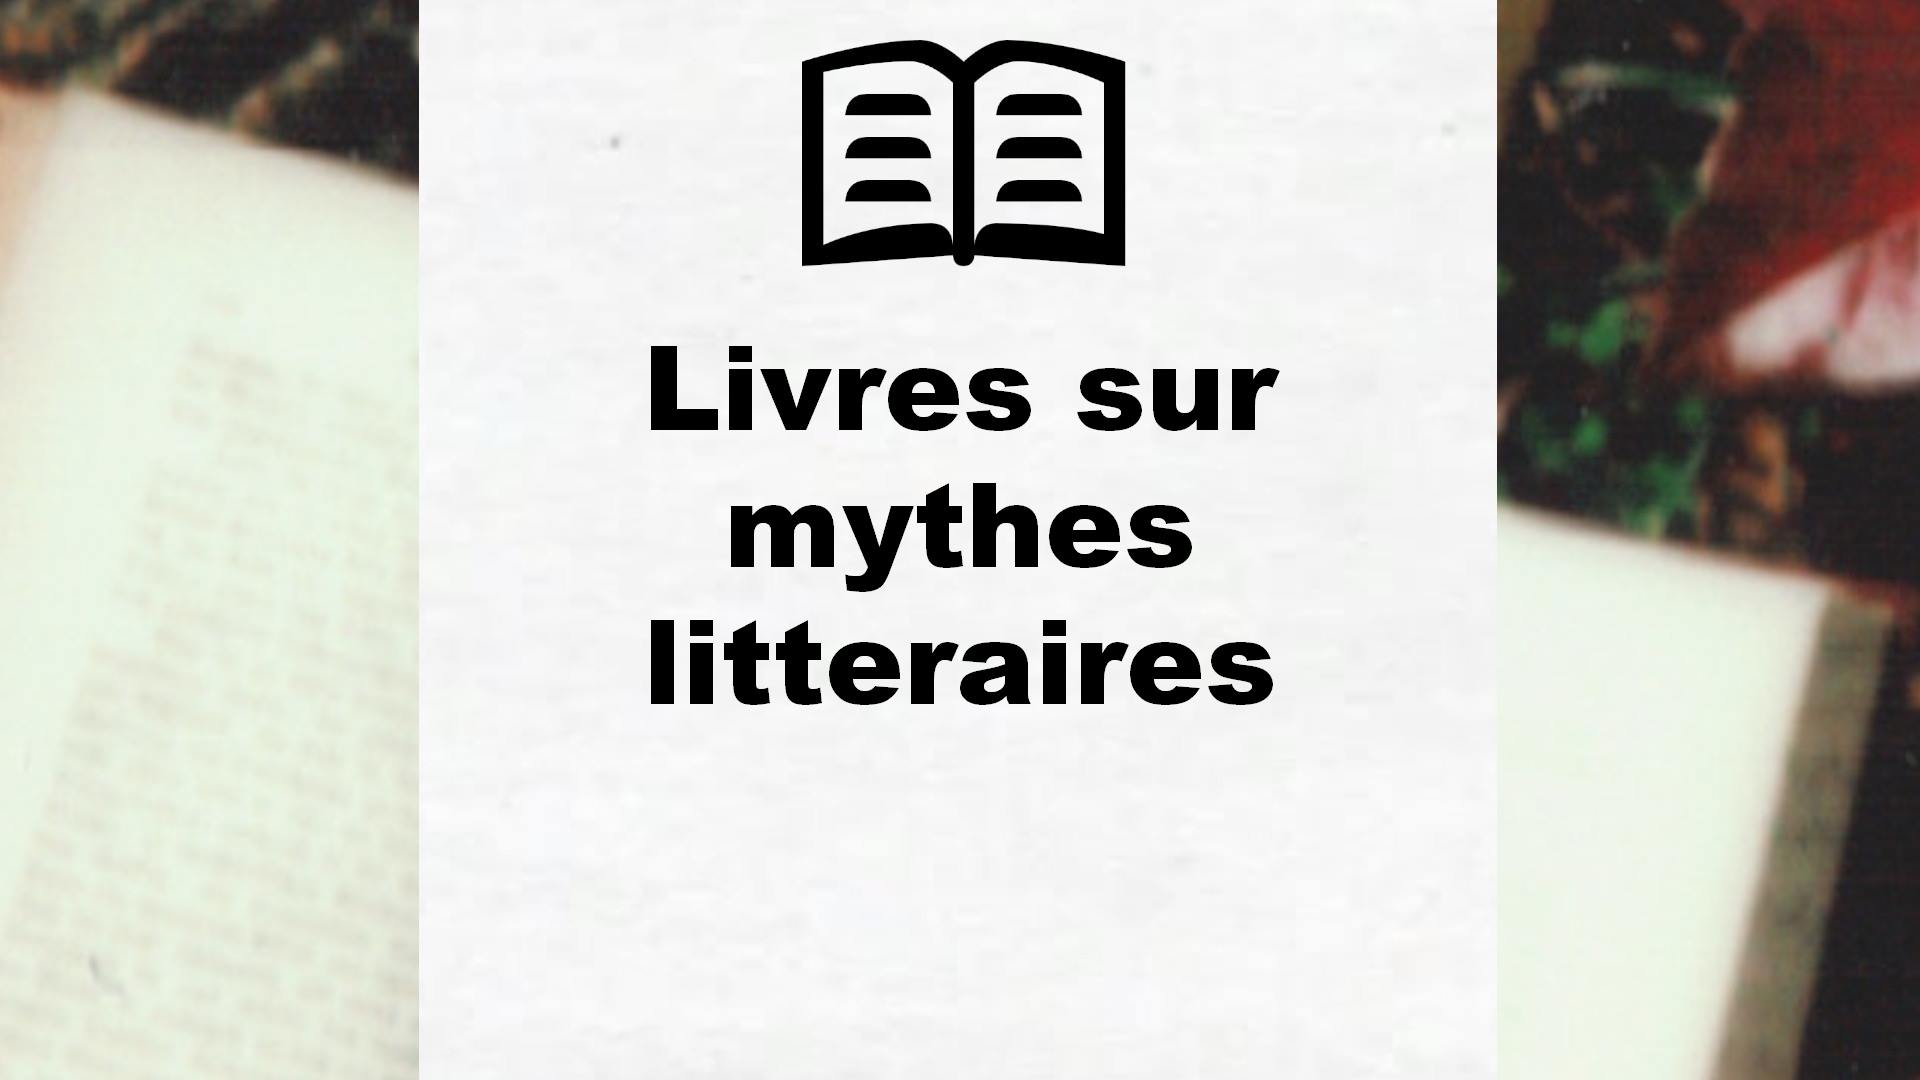 Livres sur mythes litteraires